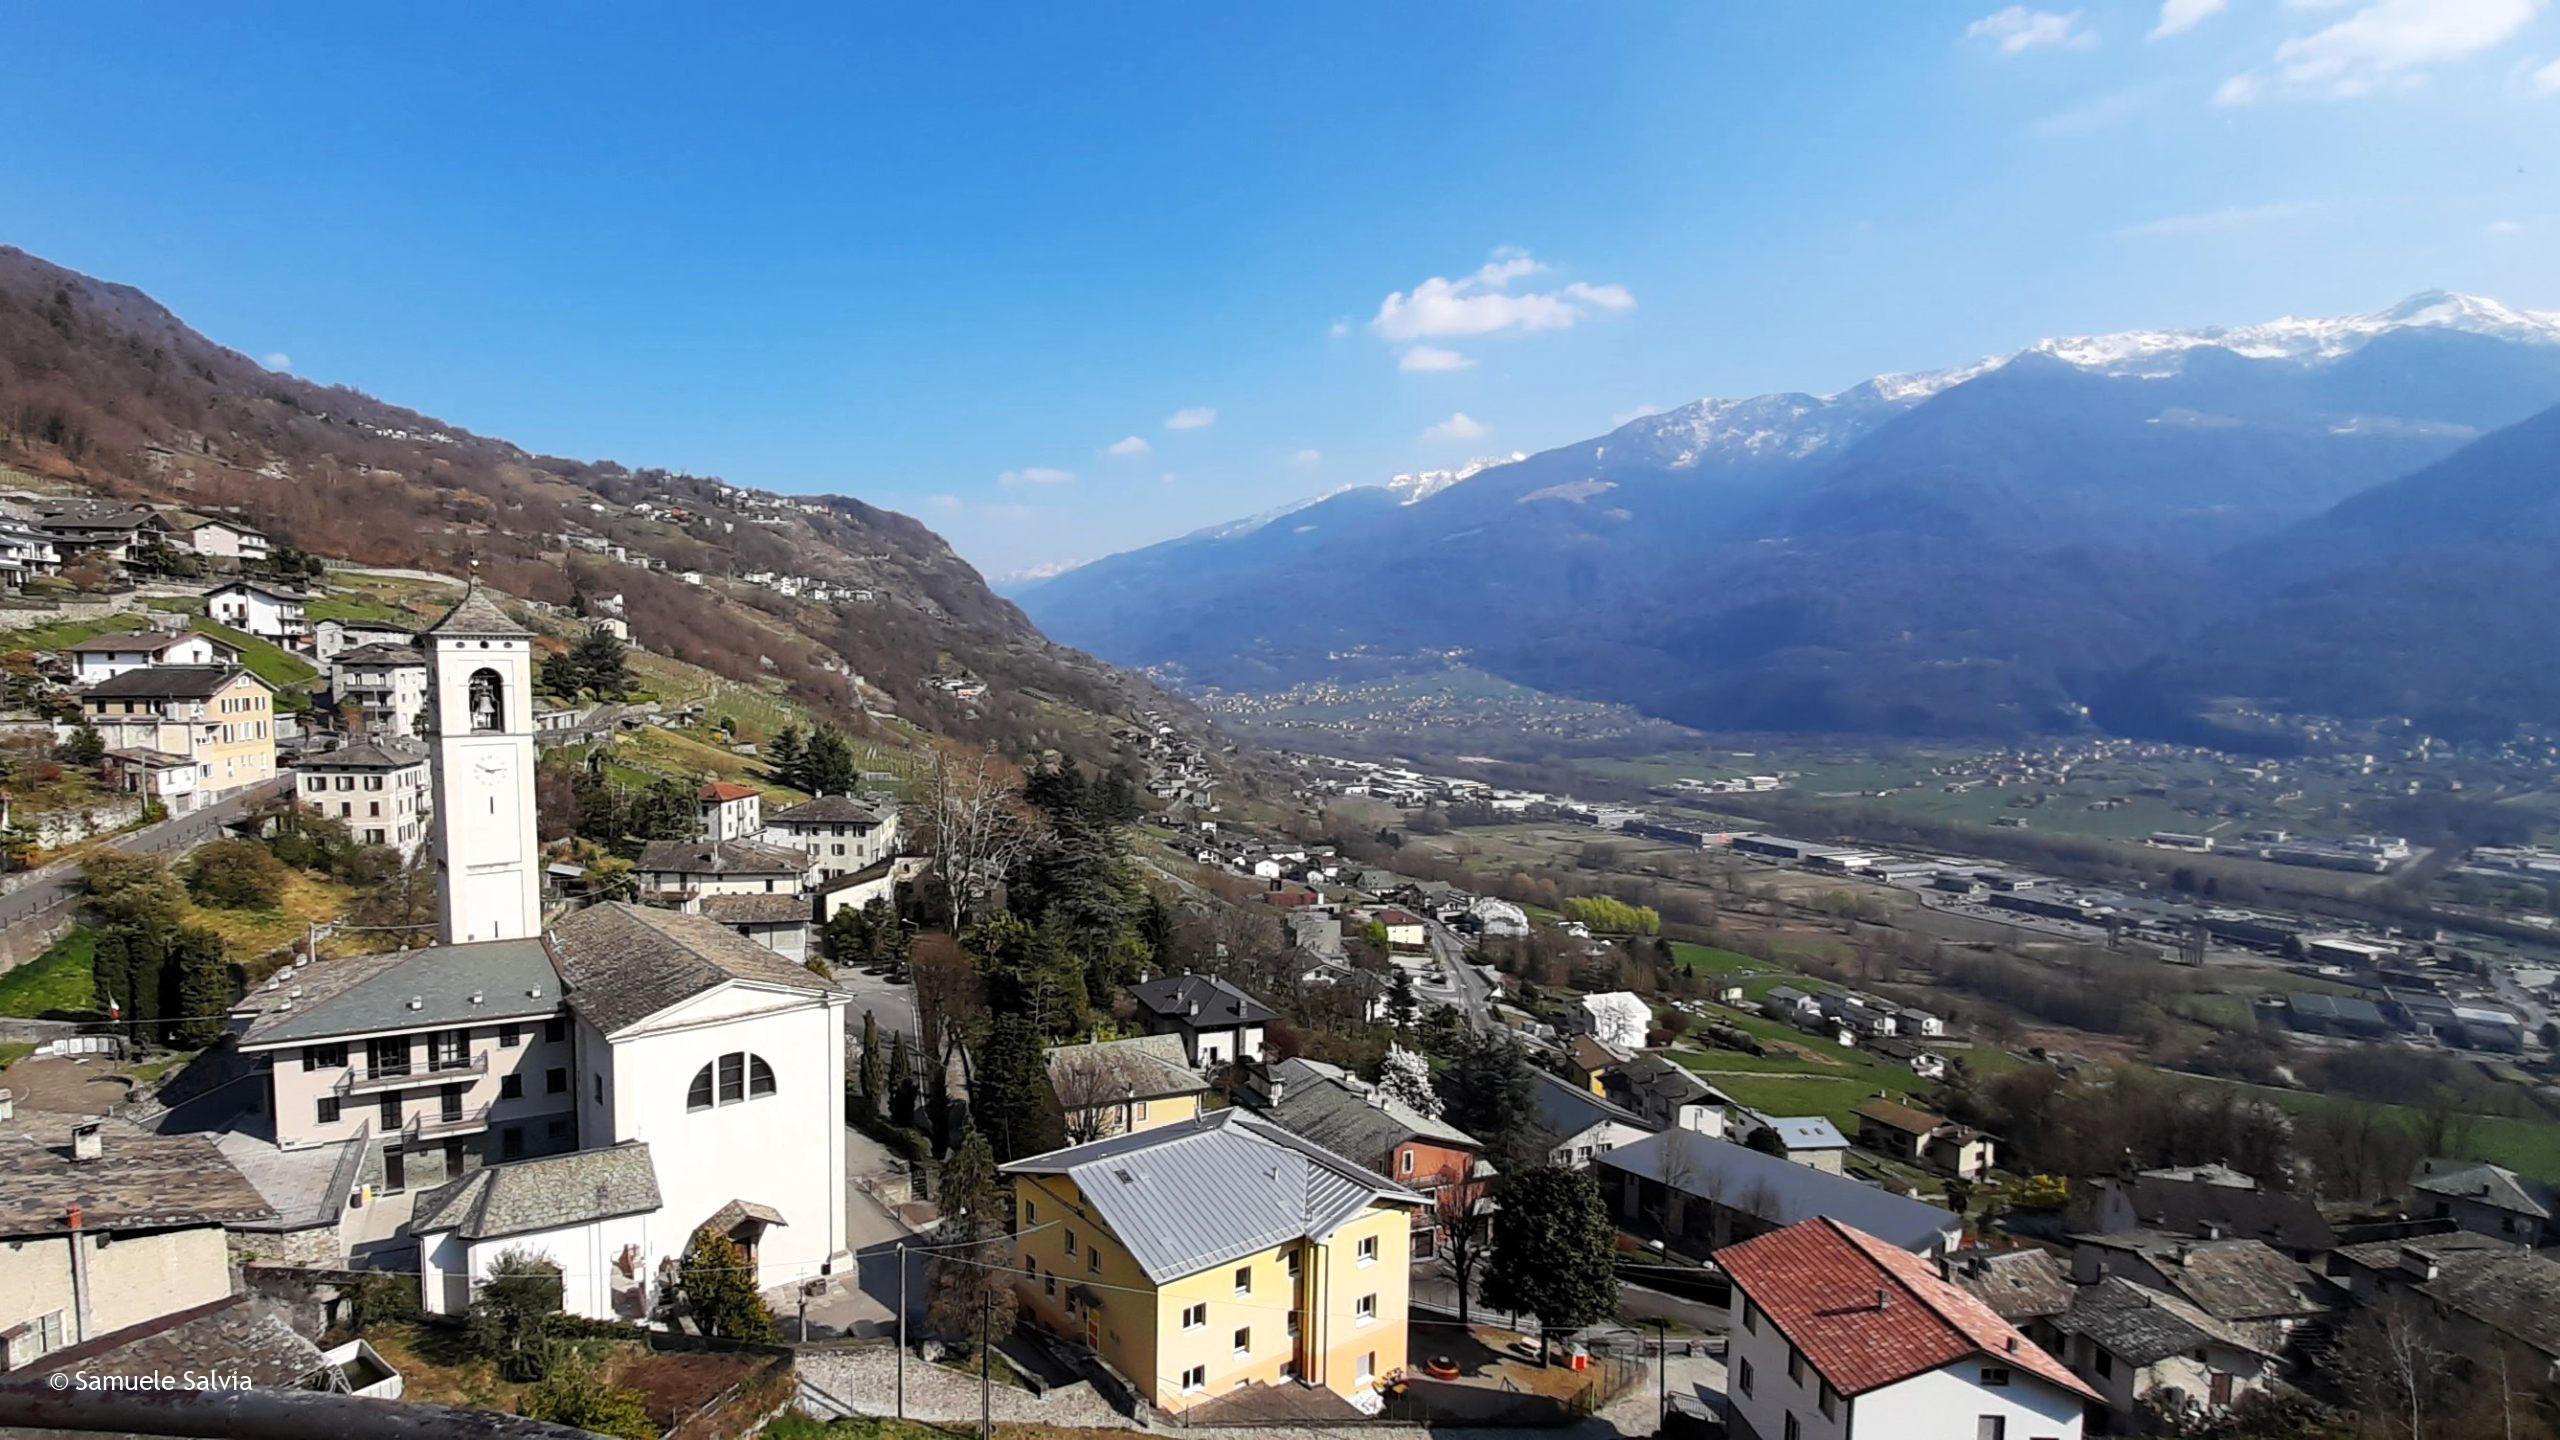 Castione Andevenno e la vista sulla Valtellina, uno dei paesi attraversati dalla Via dei Terrazzamenti.